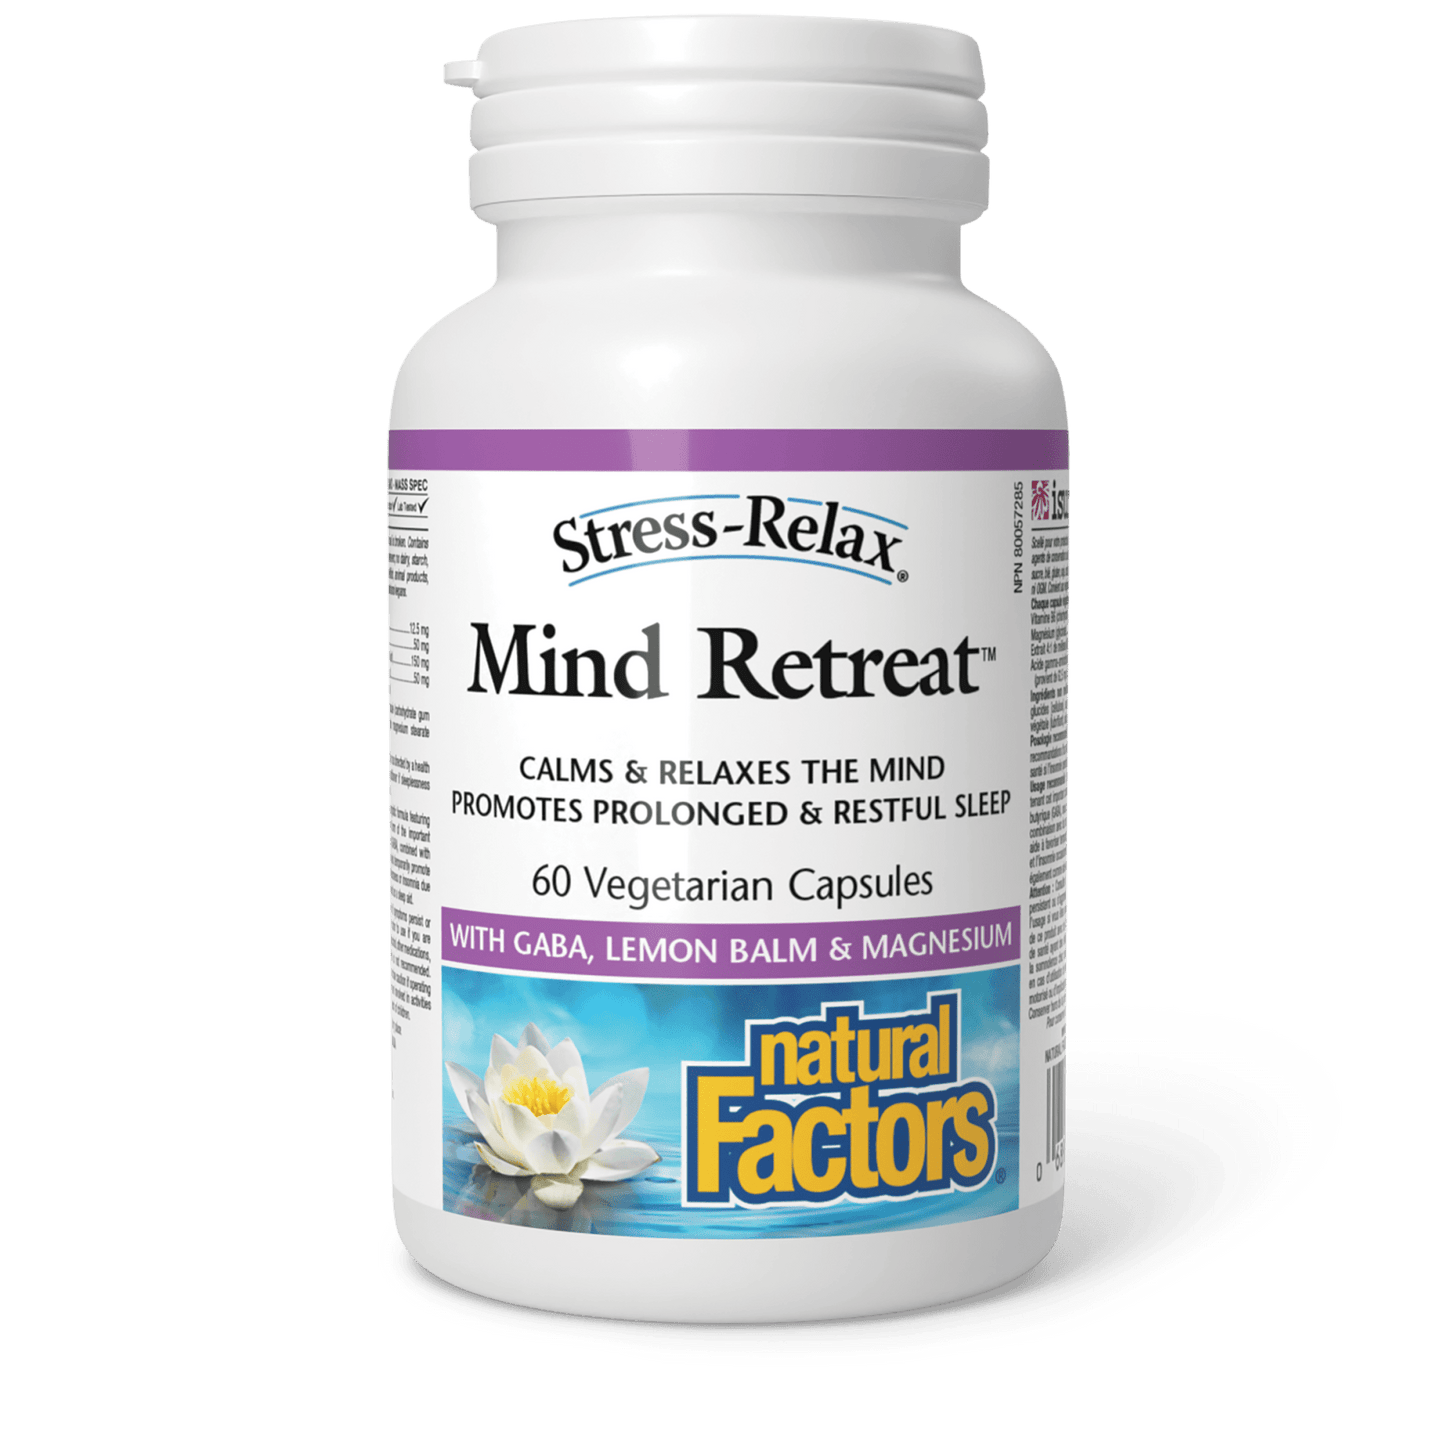 Mind Retreat, Stress-Relax, Natural Factors|v|image|2841